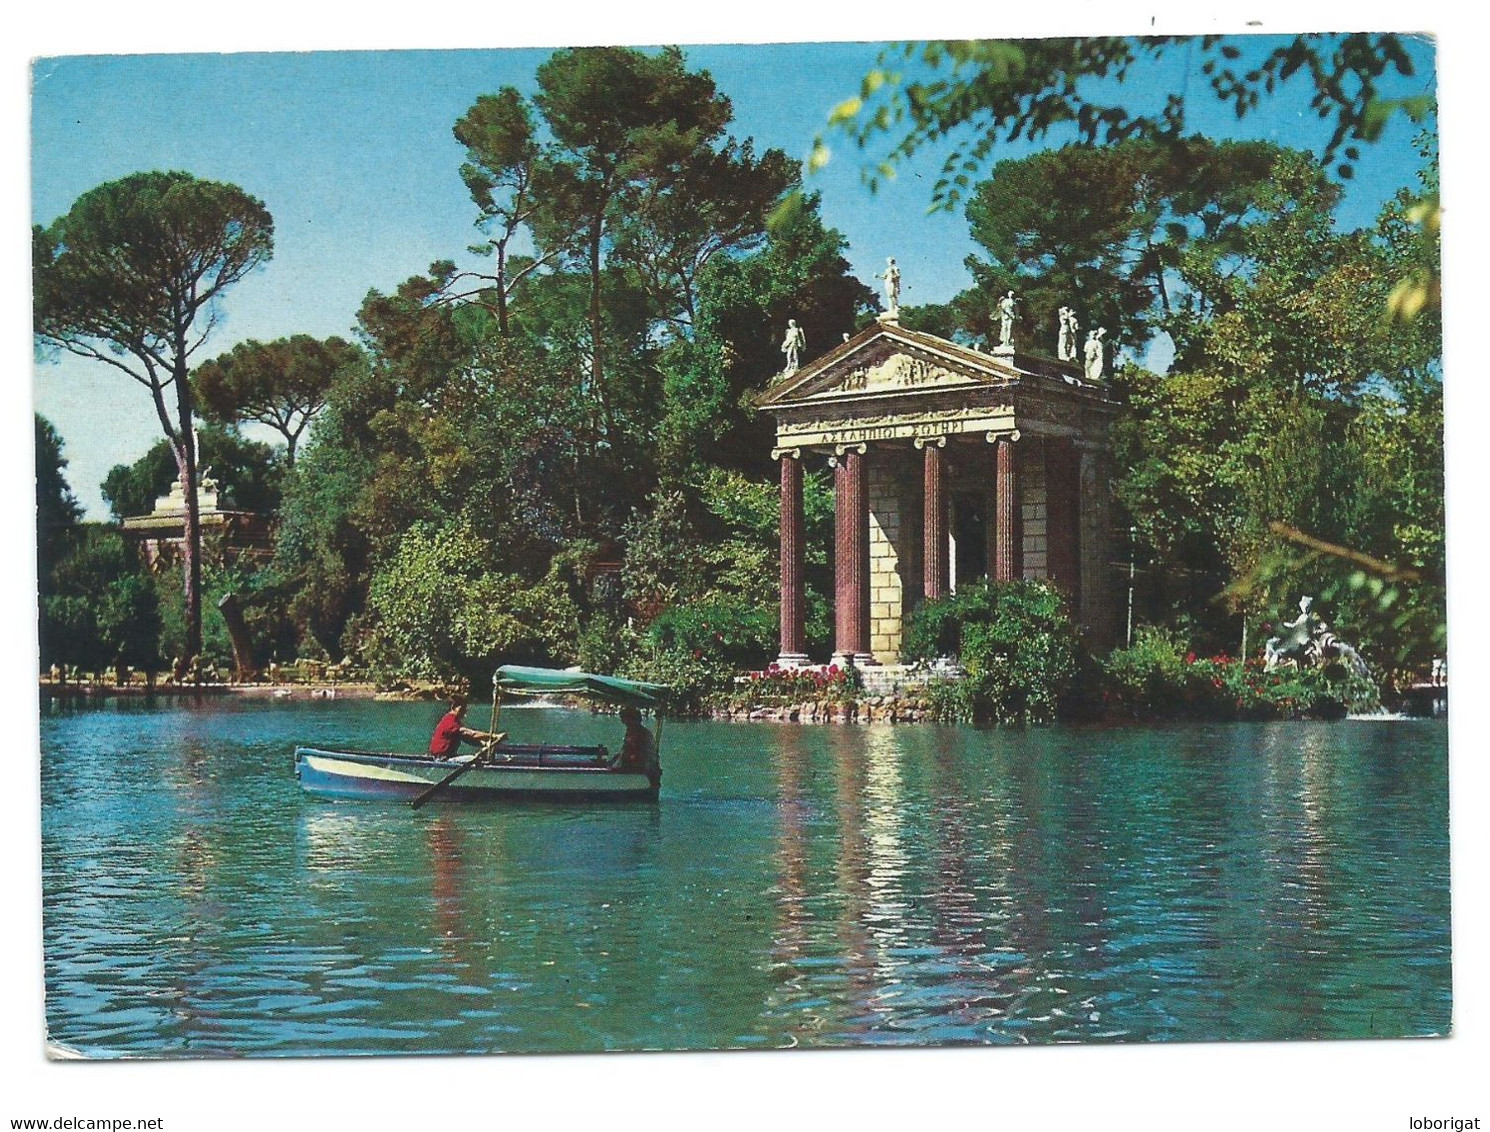 VILLA BORGHESE - IL LAGHETTO / VILLA BORGHESE - LITTLE LACKE / VILLA BORGHESE - LE PETIT LAC.- ROMA - ( ITALIA ) - Parks & Gardens